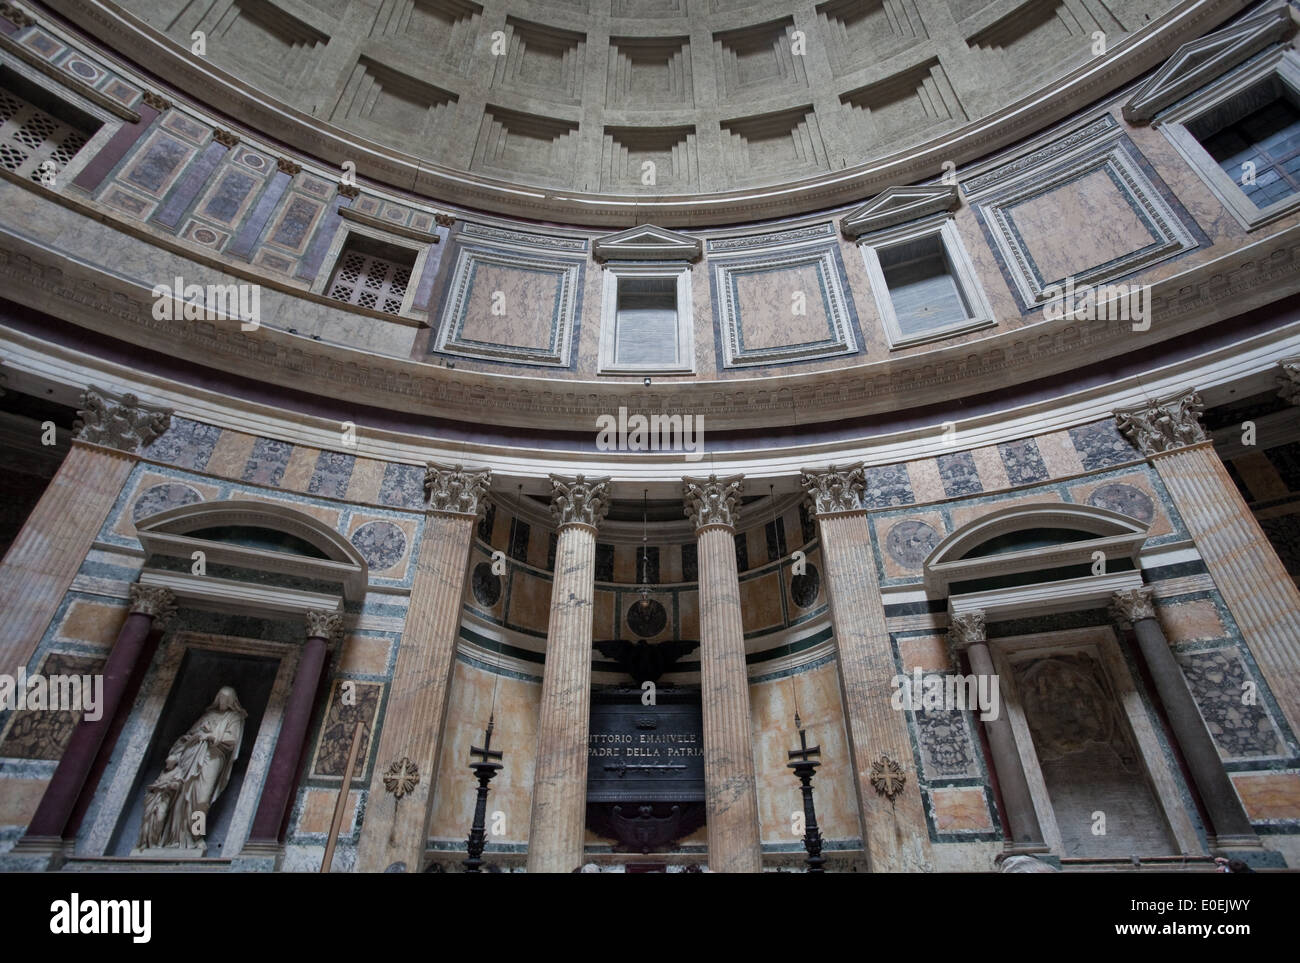 Innenansicht Pantheon, Rom, Italien - Pantheon, Rome, Italy Stock Photo